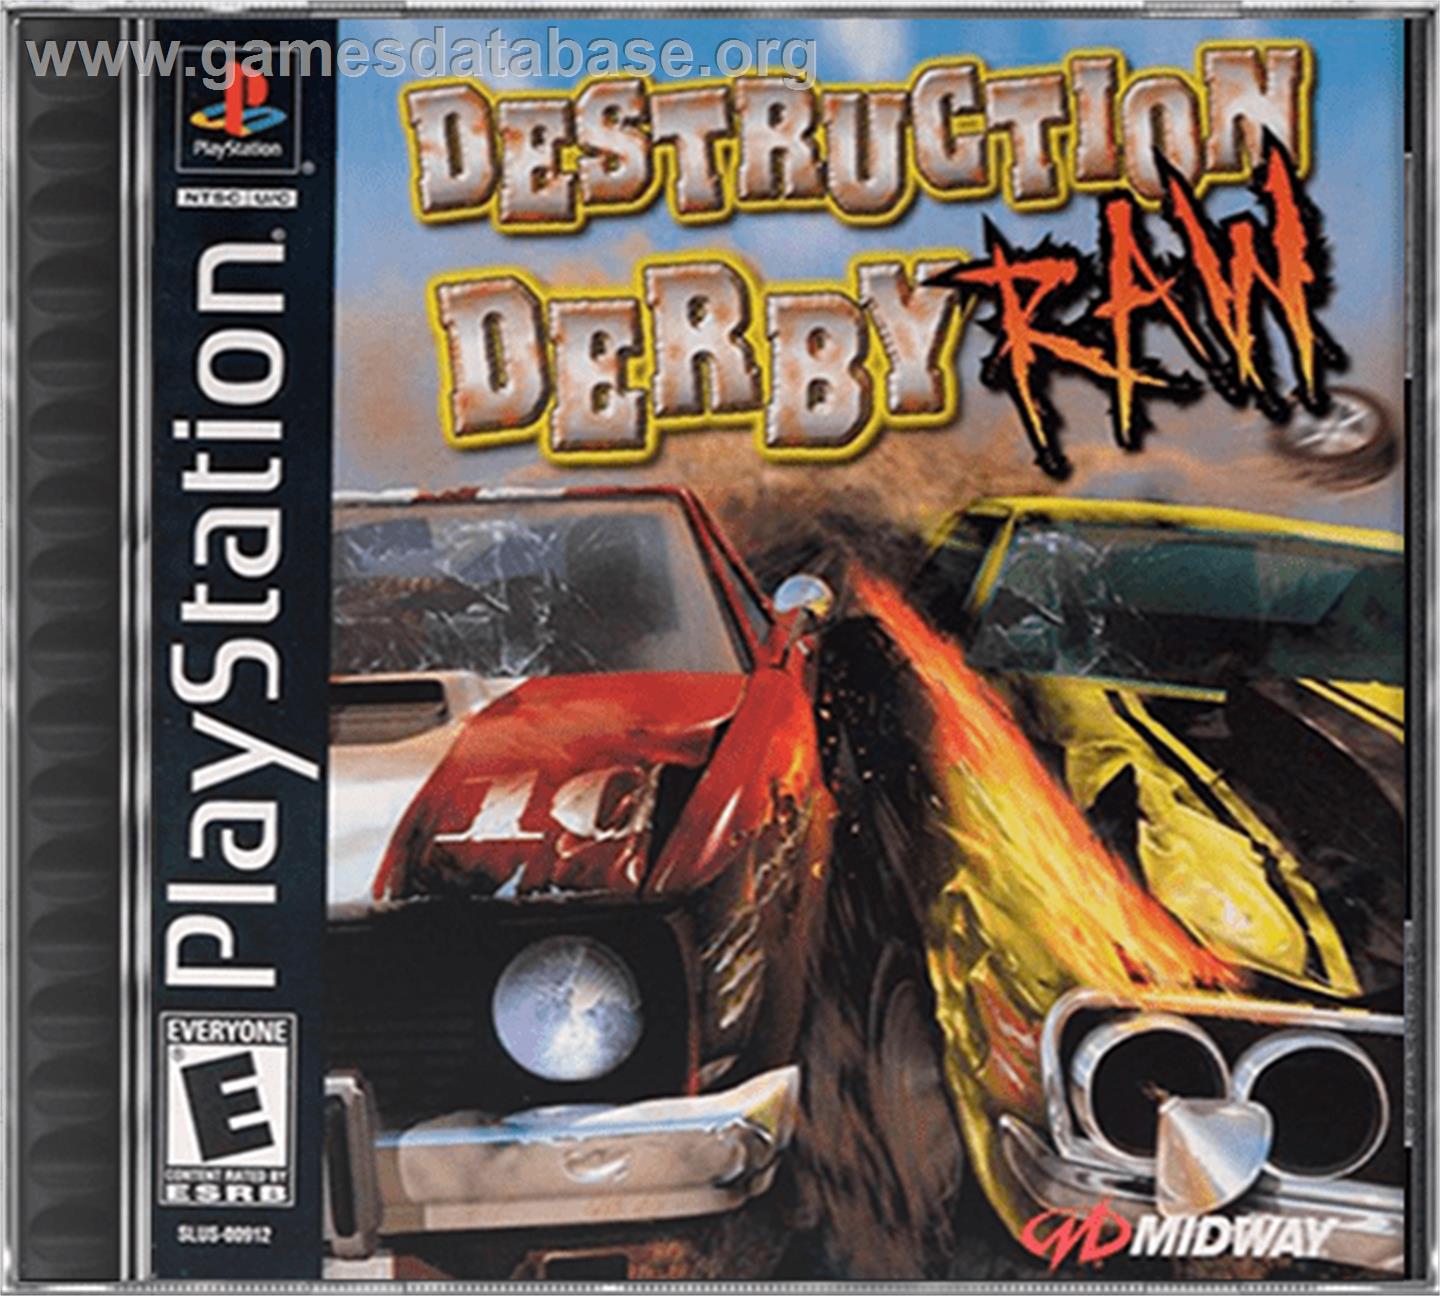 Destruction Derby Raw - Sony Playstation - Artwork - Box